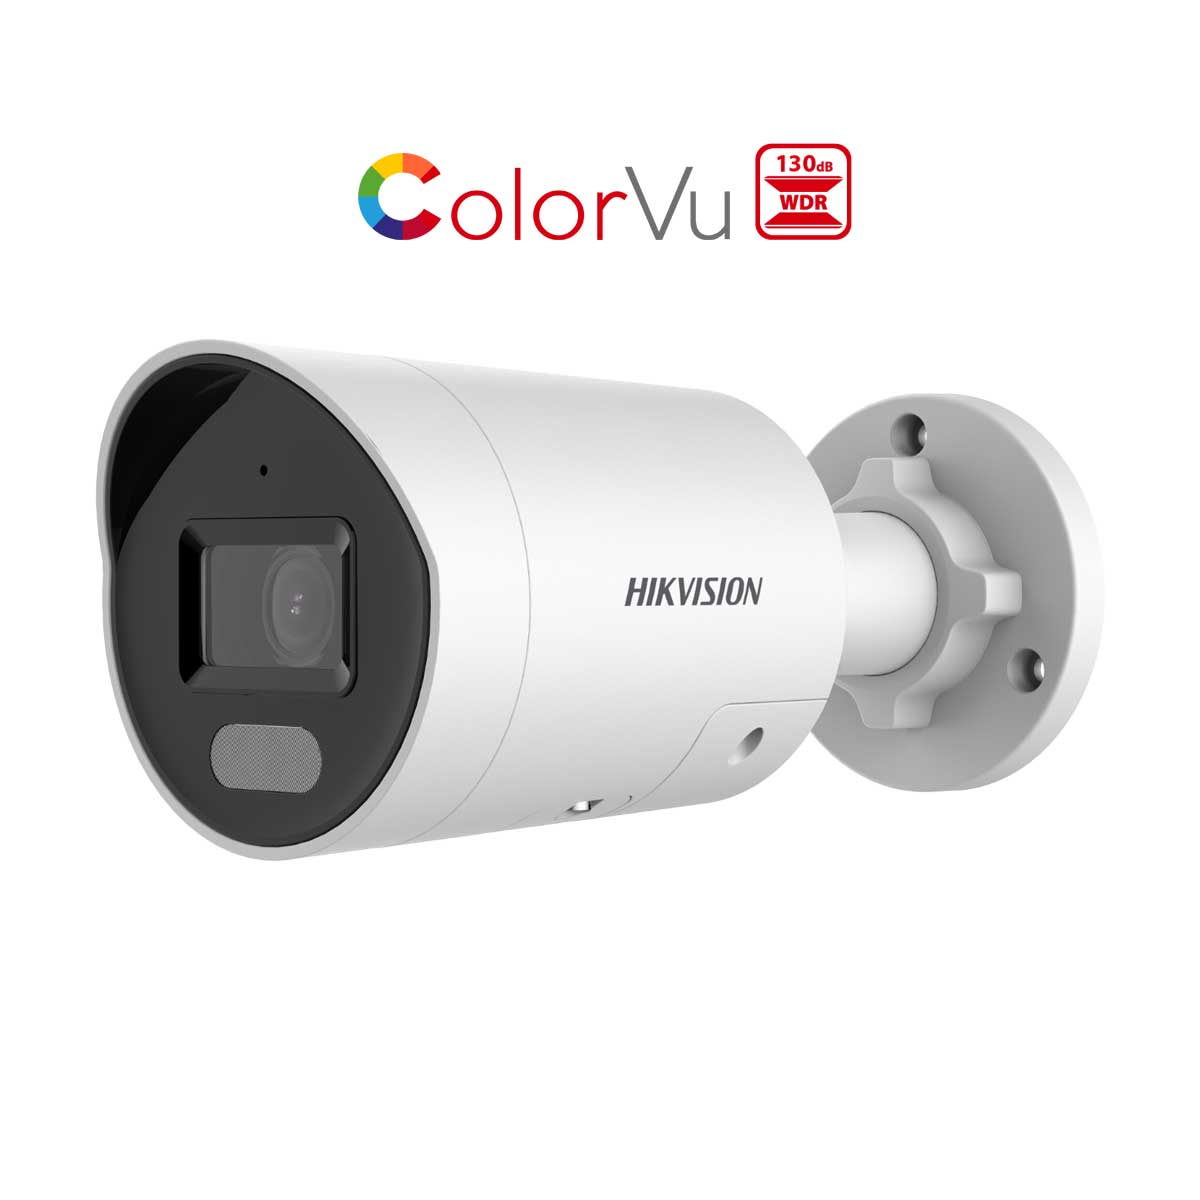 Camera IP thân trụ Colorvu chống báo giả Hikvision DS-2CD2047G2-LU/SL 4MP, tích hợp mic thu âm, chống ngược sáng thực WDR 130 dB